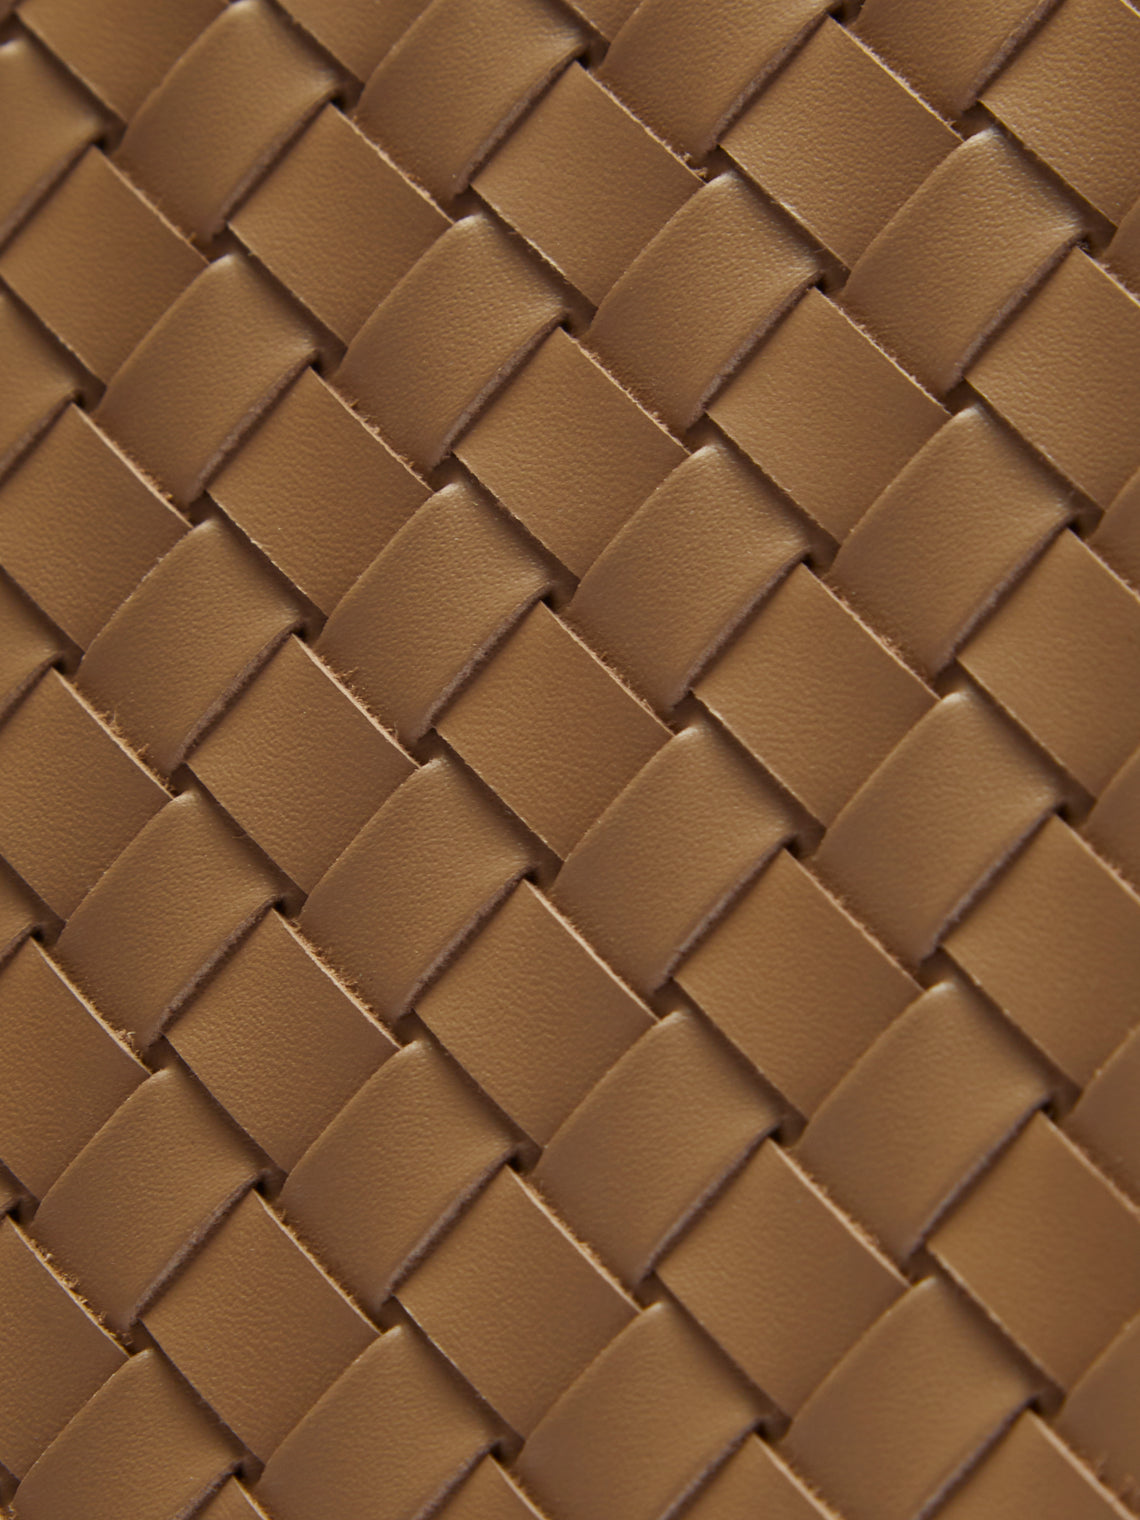 Riviere - Woven Leather Bin - Tan - ABASK